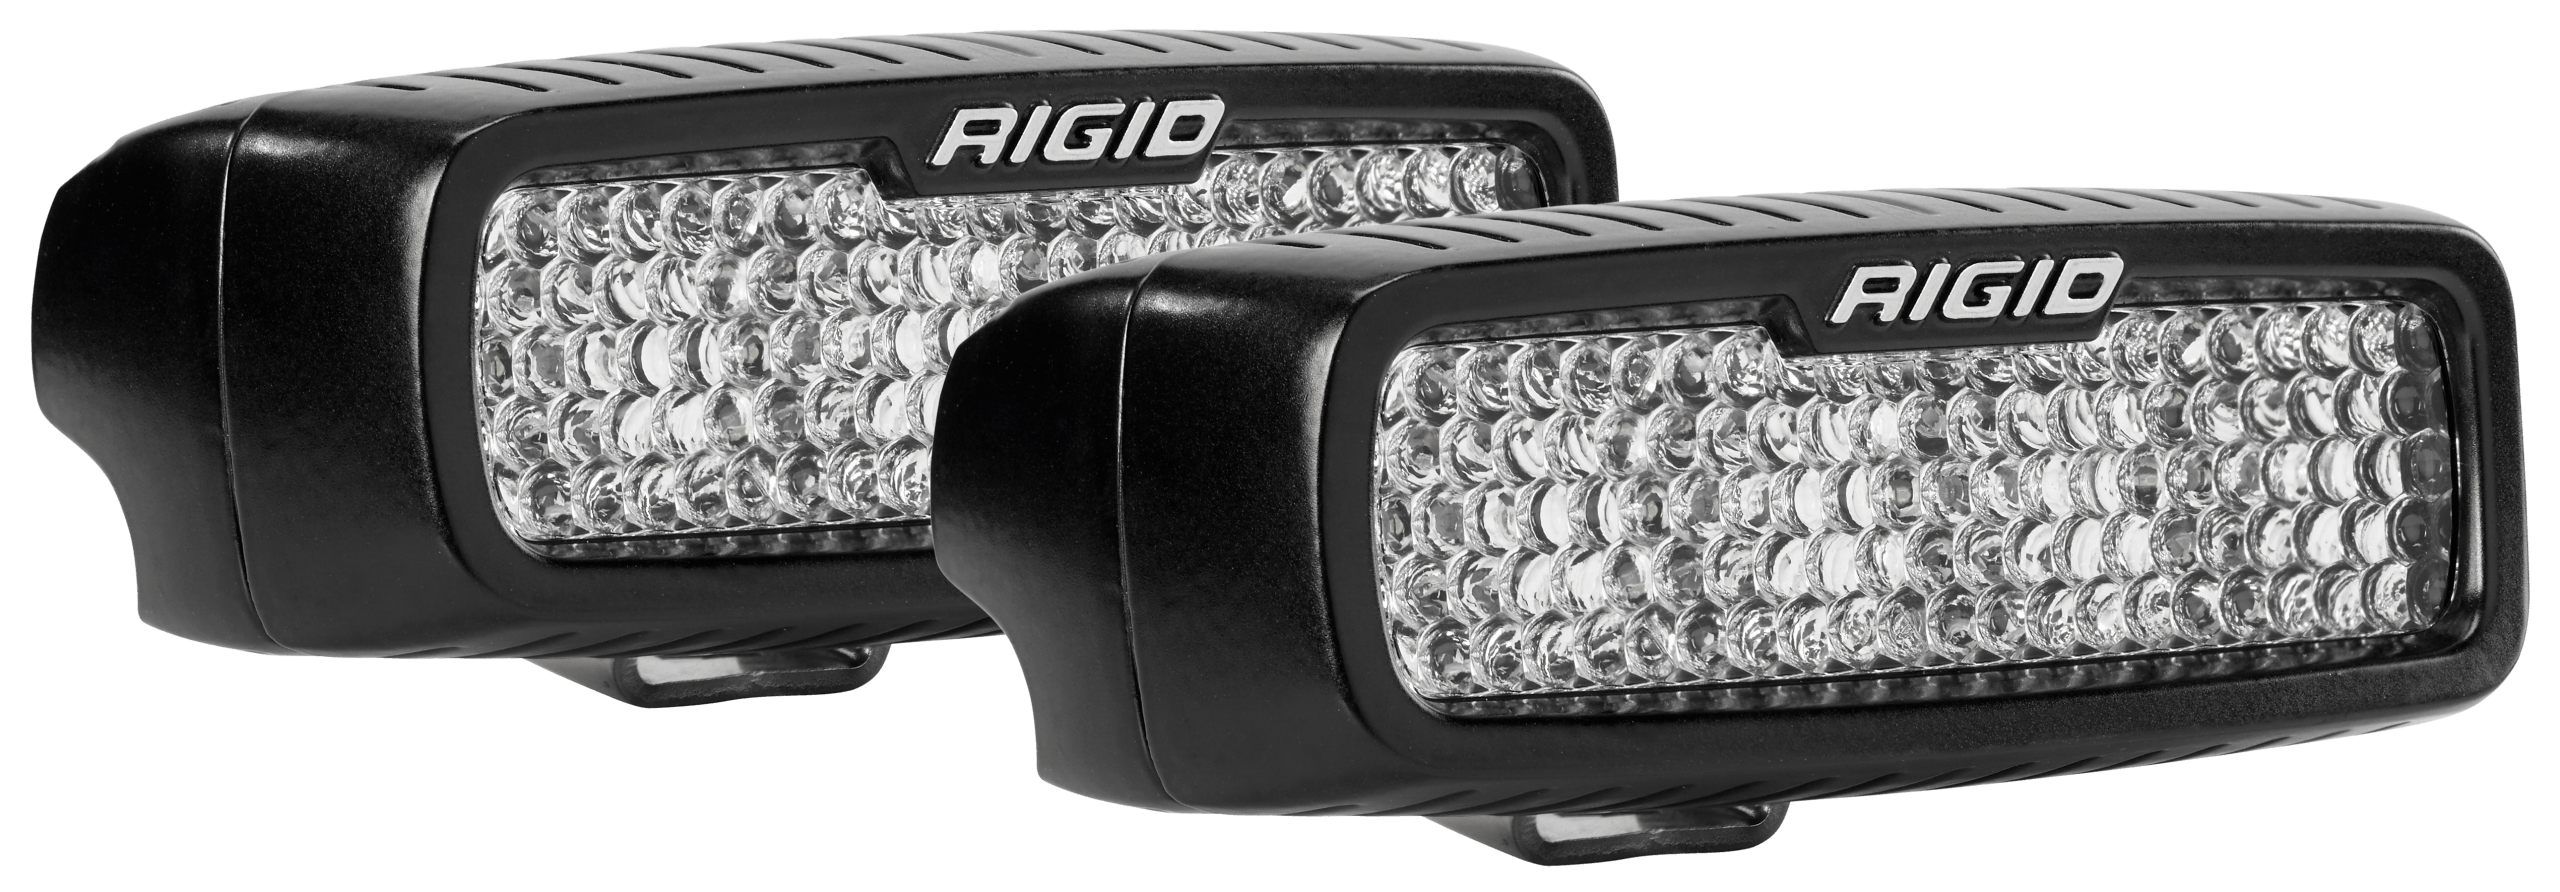 RIGID Industries 980023 SR-Q PRO Diffused Backup Kit